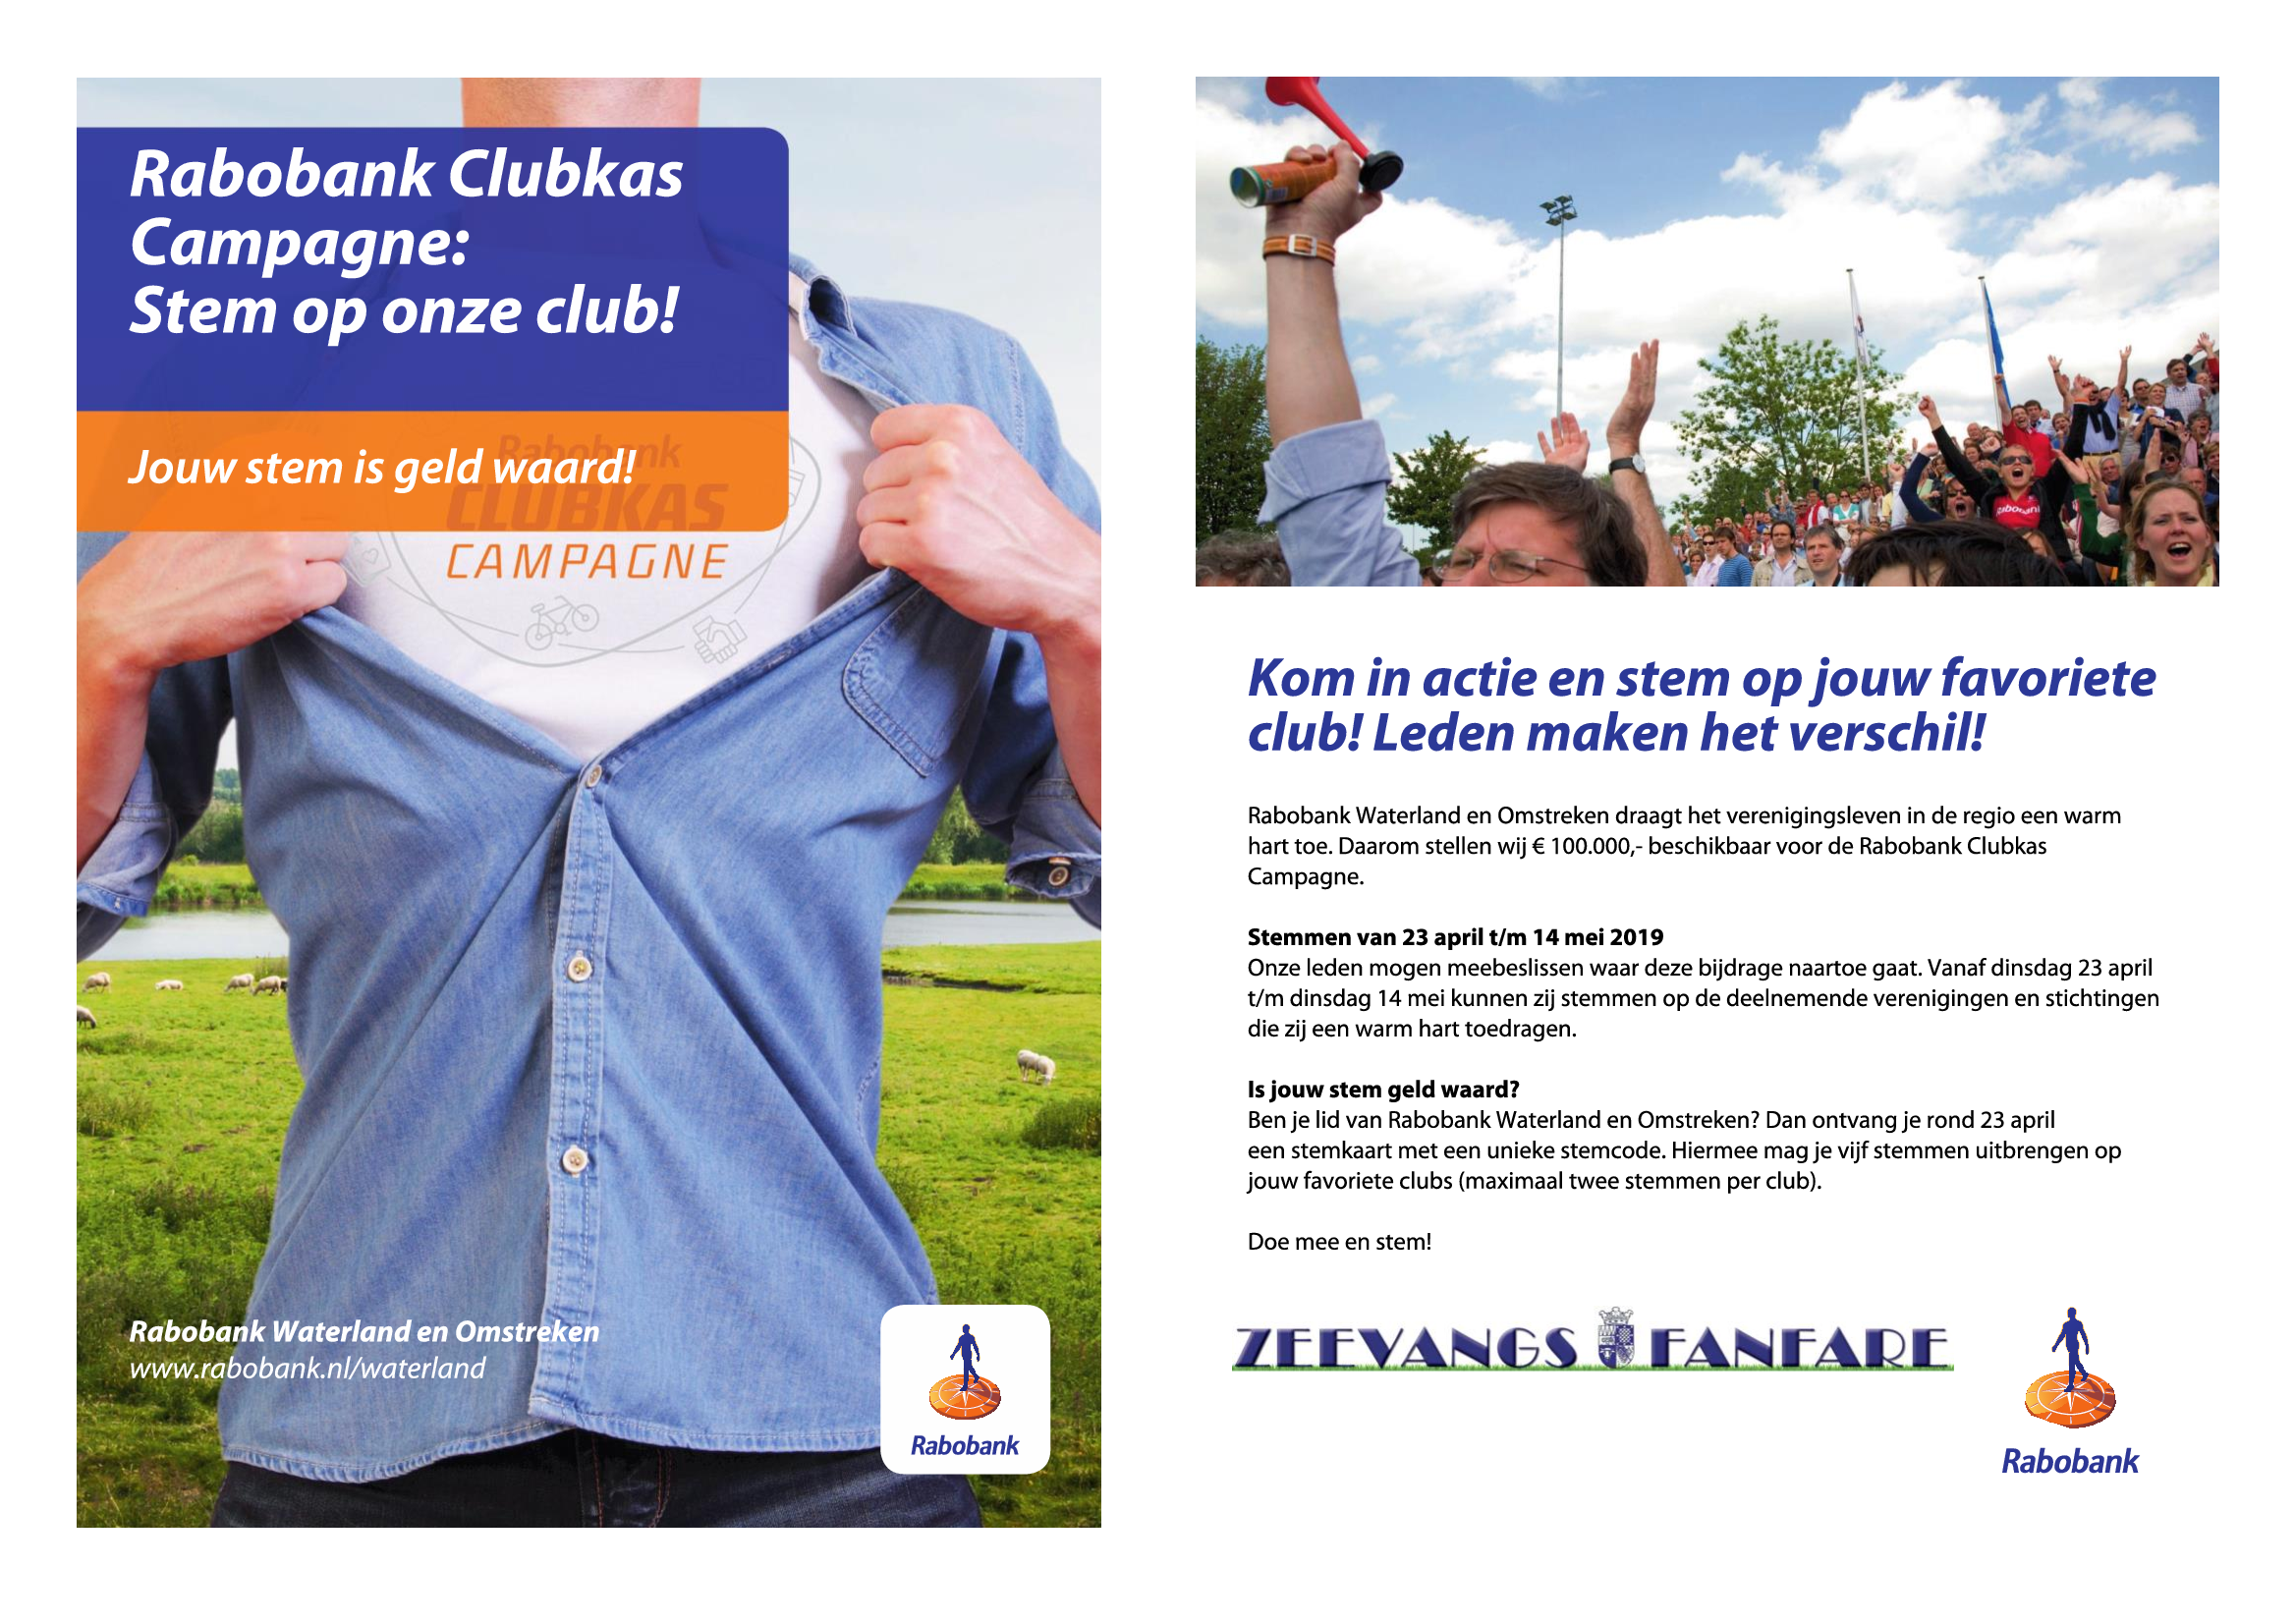 Rabobank Clubkas Campagne; stem voor Zeevangsfanfare